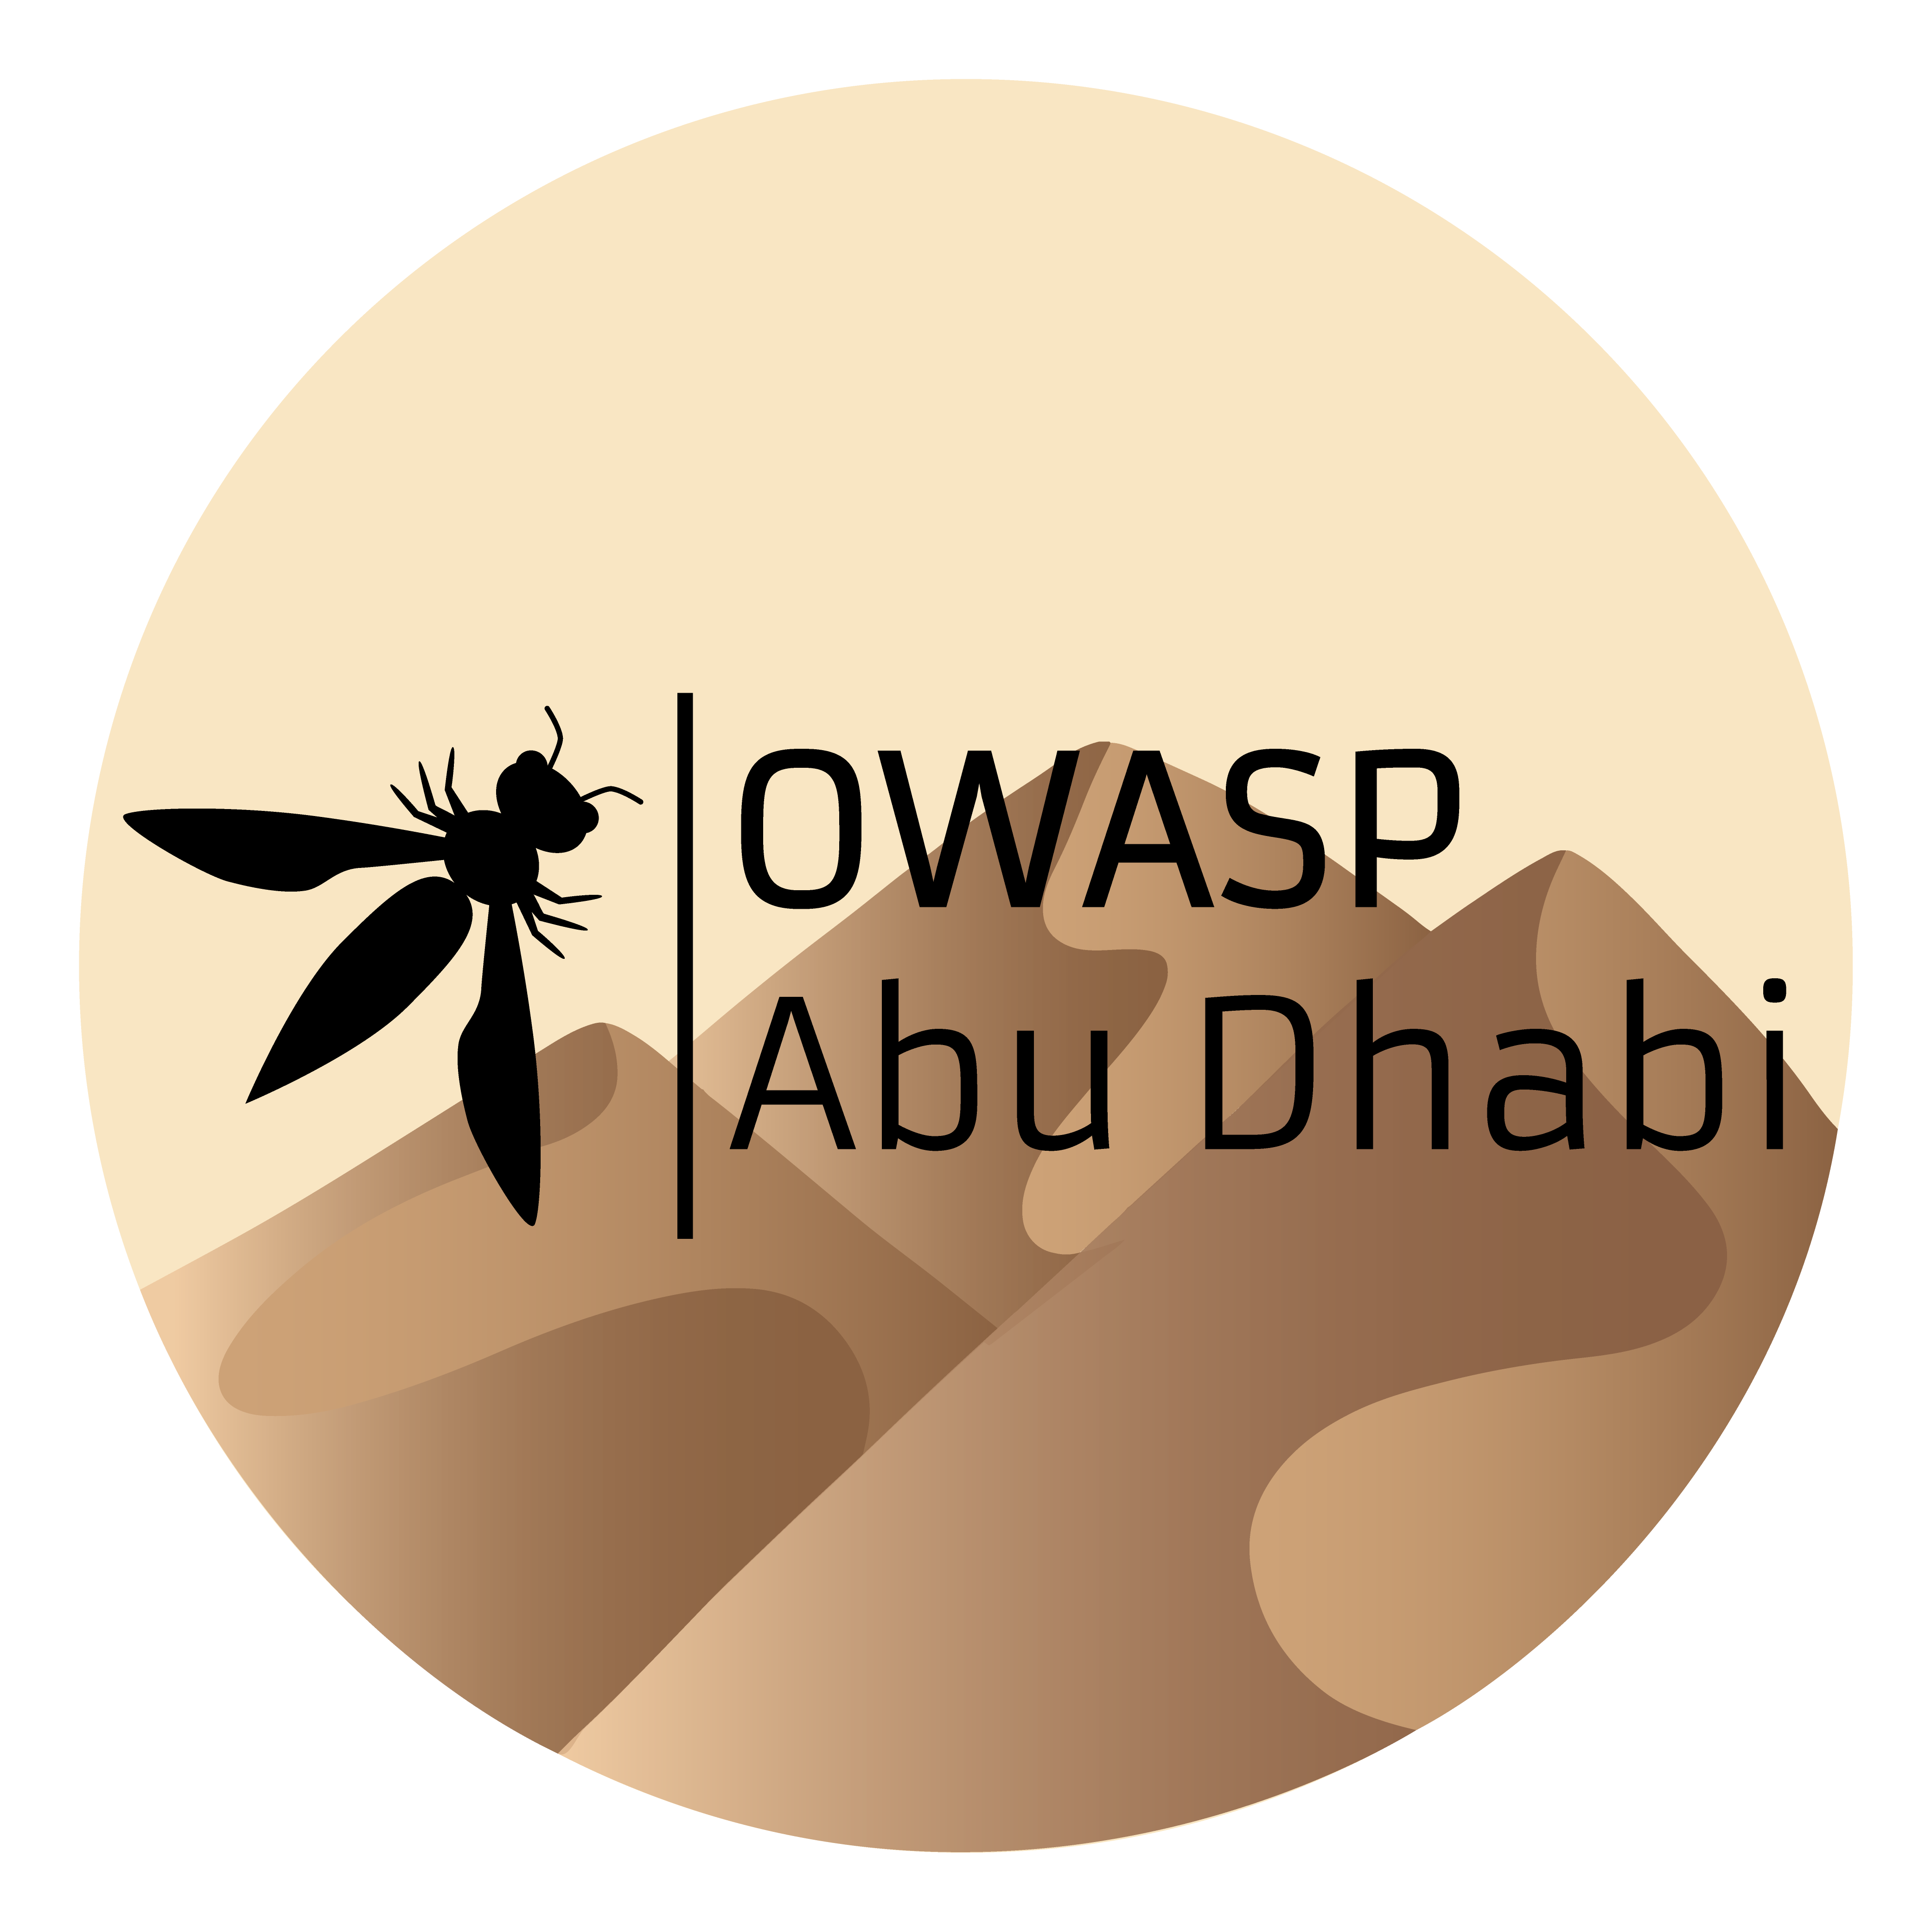 OWASP Abu Dhabi Logo